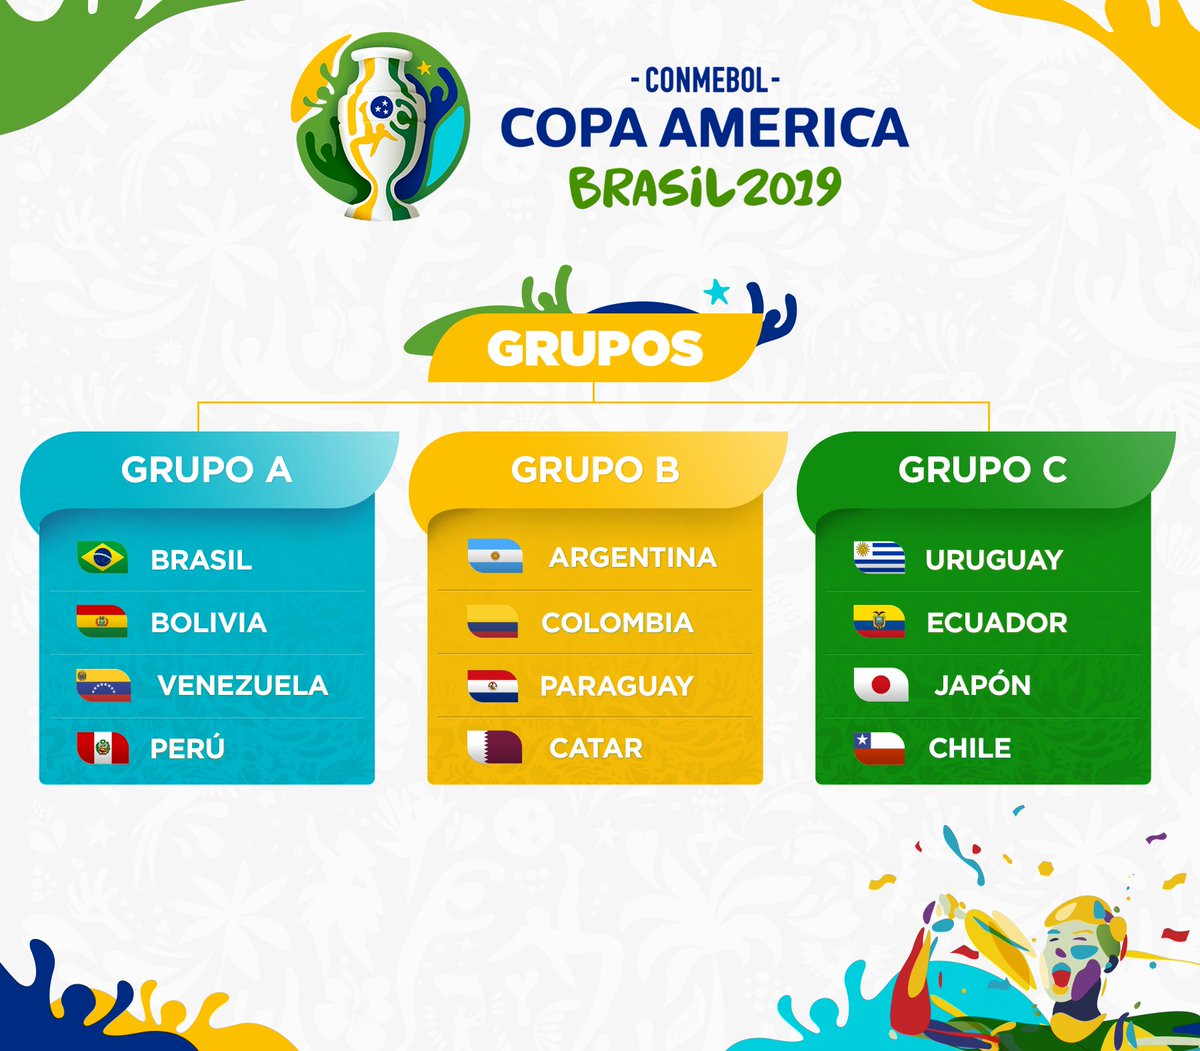 Бразилия, Месси и все остальные. Превью Копа Америка-2019 - изображение 1